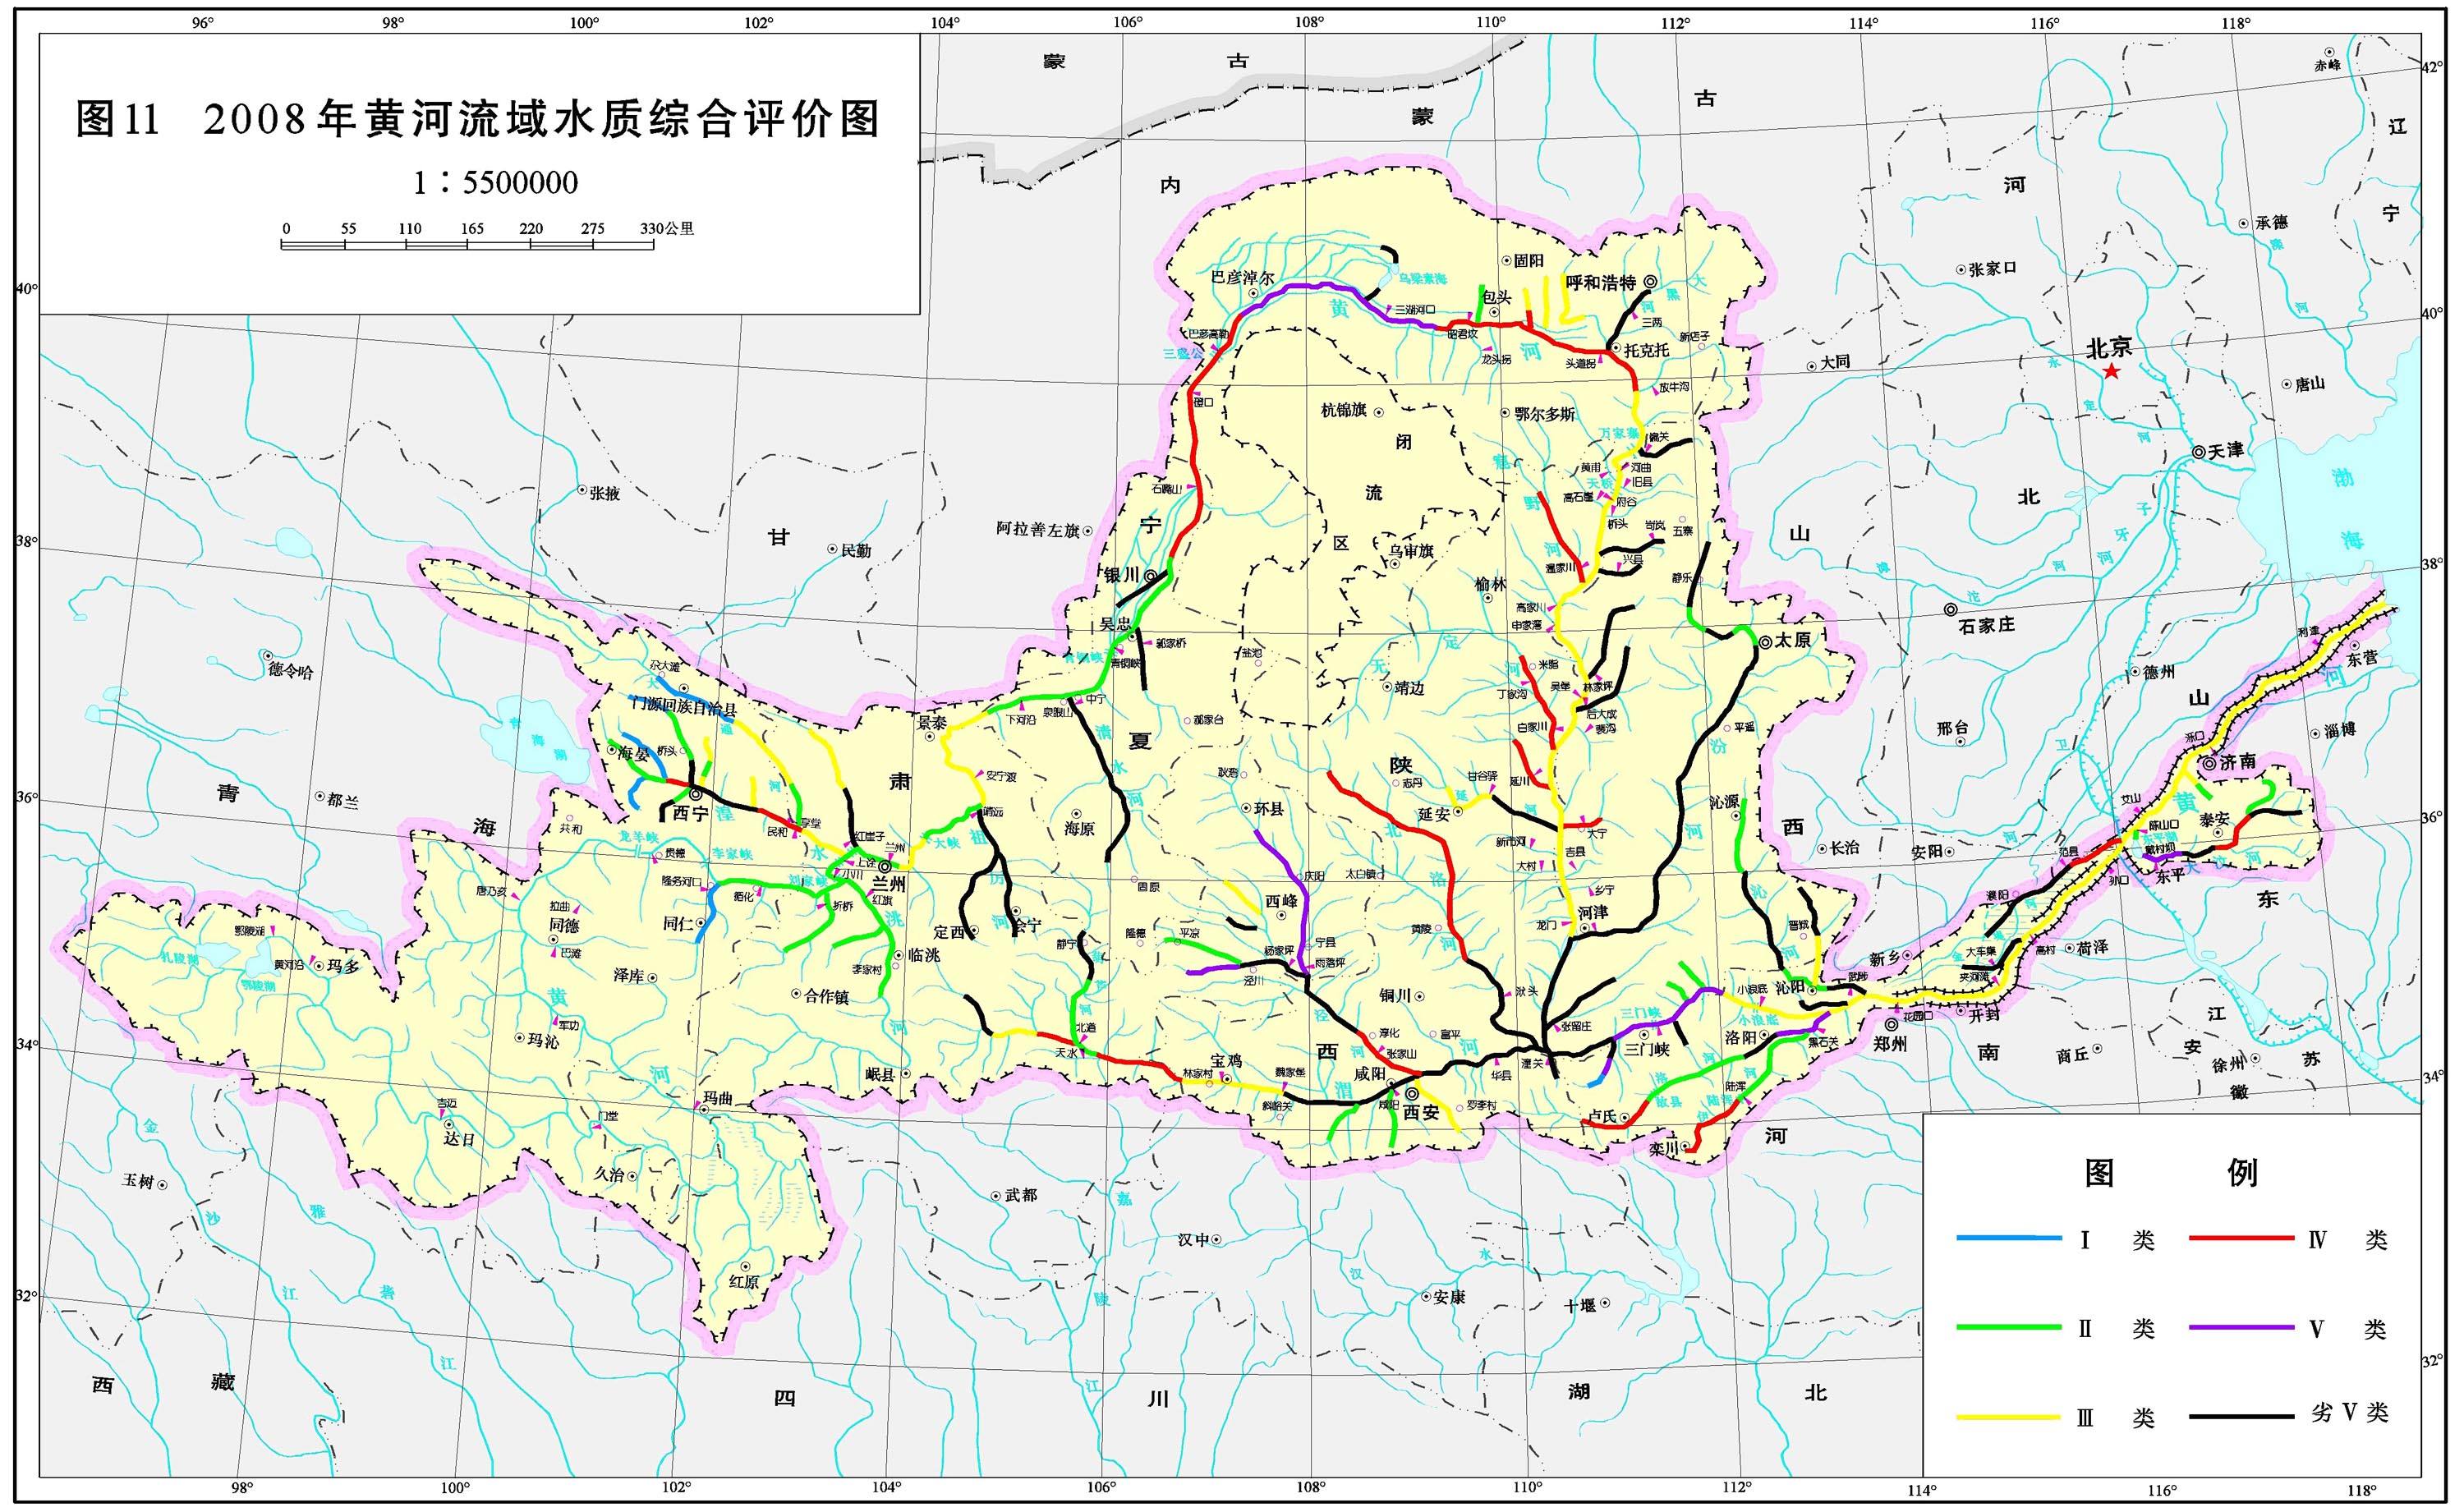 黃河(中國第二長河)